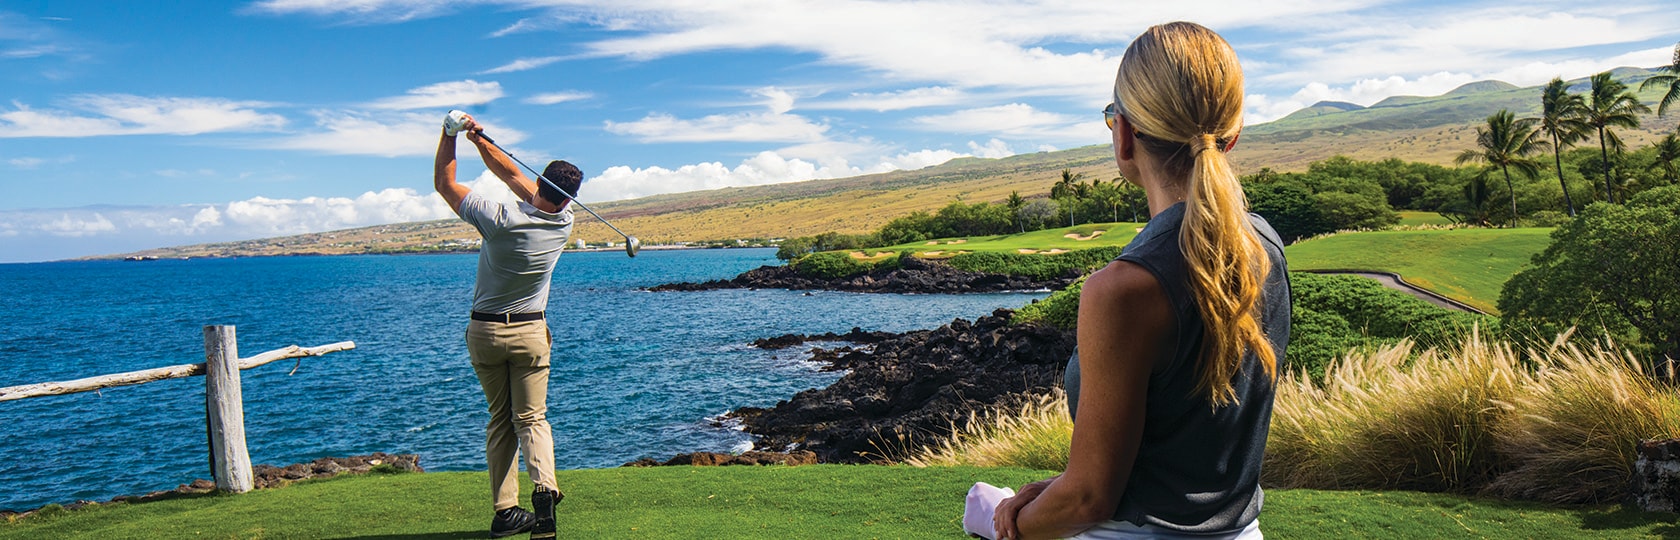 Mann, der einen Golfball auf einem Golfplatz am Meer abschlägt und von einer Frau beobachtet wird